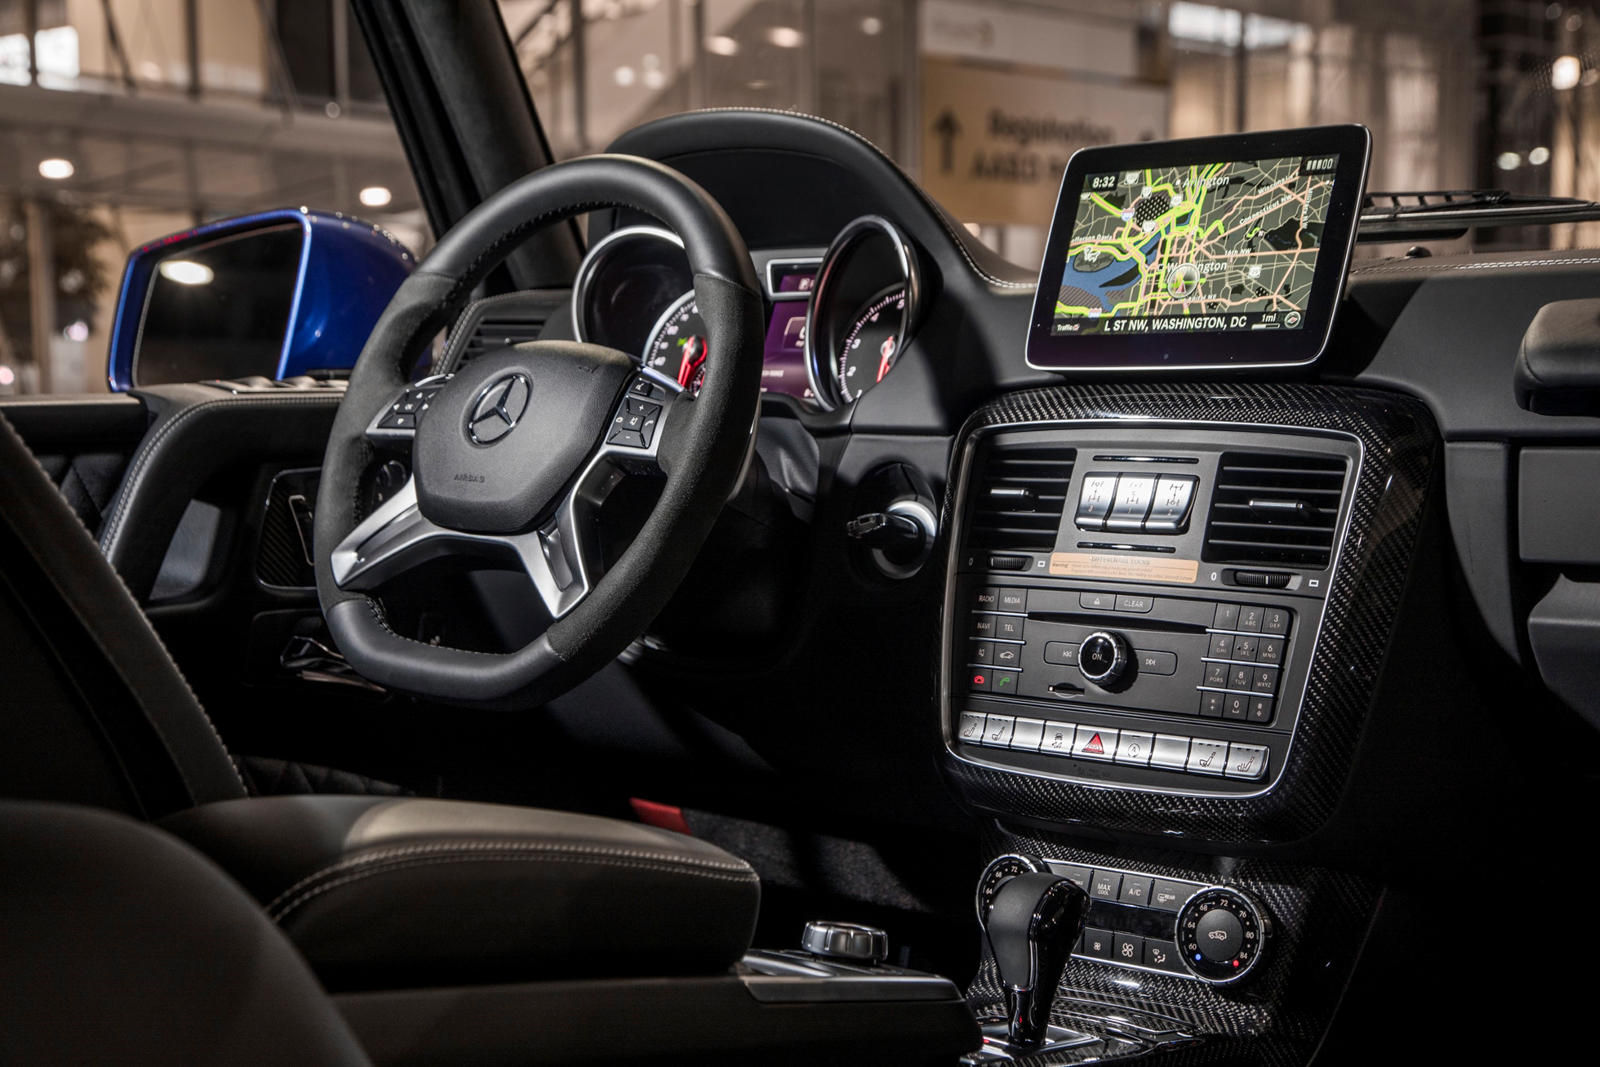 2017 Mercedes-Benz G550 4x4 Squared Interior Photos | CarBuzz